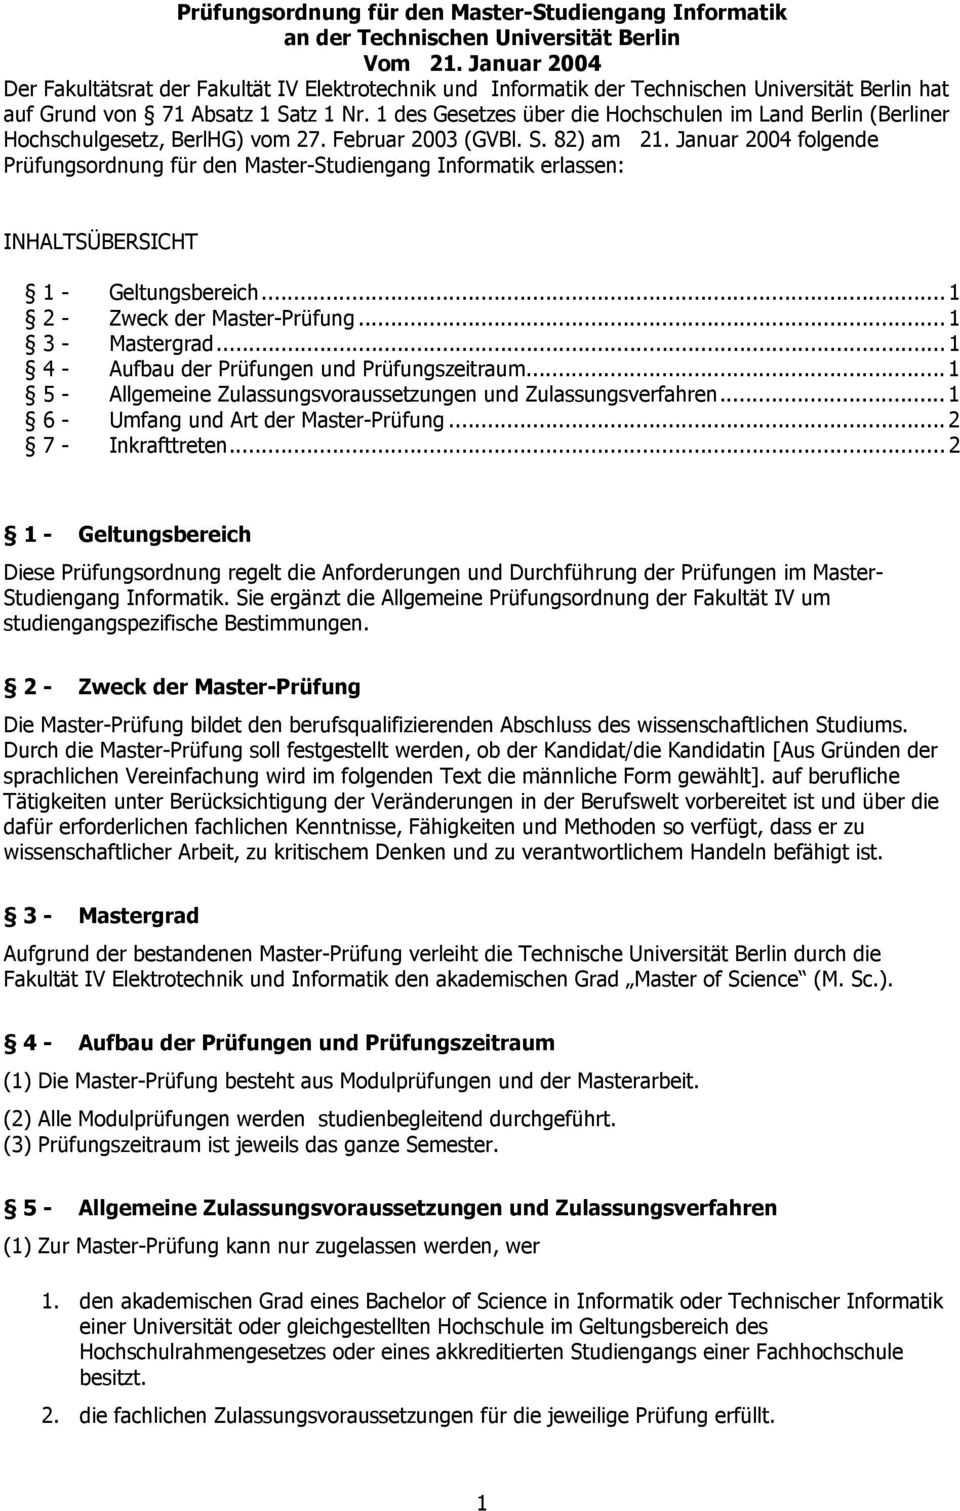 1 des Gesetzes über die Hochschulen im Land Berlin (Berliner Hochschulgesetz, BerlHG) vom 27. Februar 2003 (GVBl. S. 82) am 21.